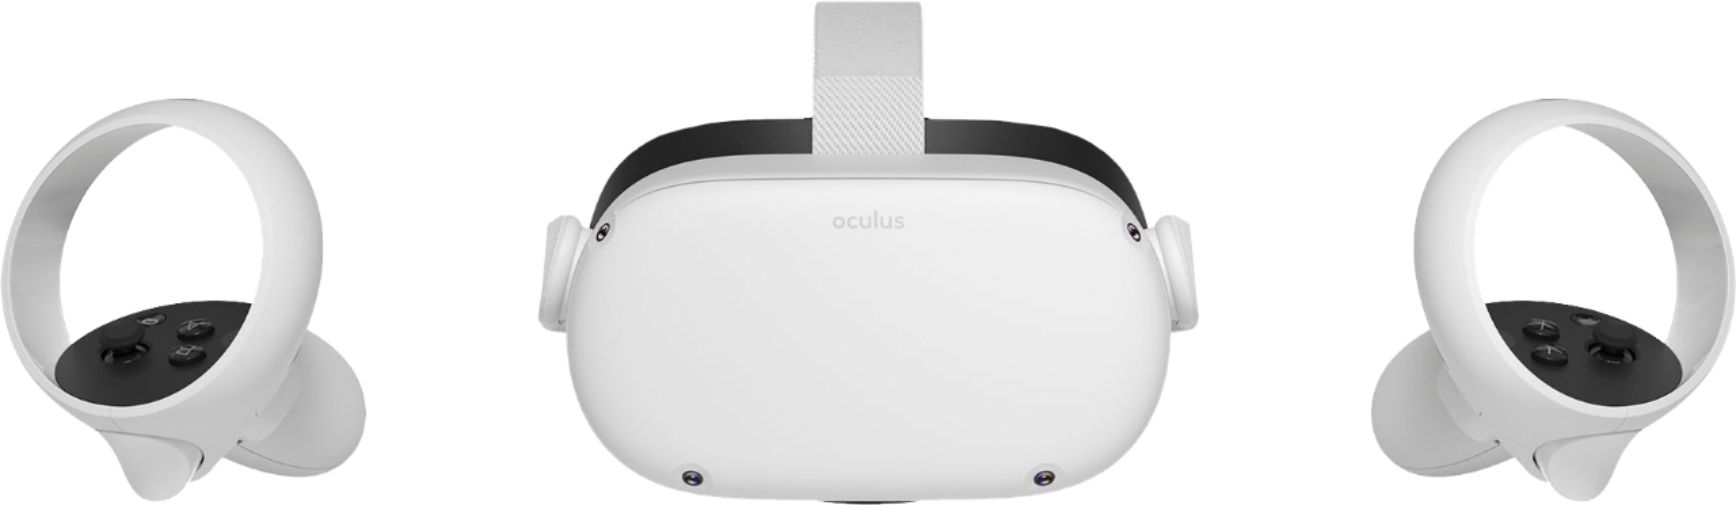 oculus quest 128gb best buy